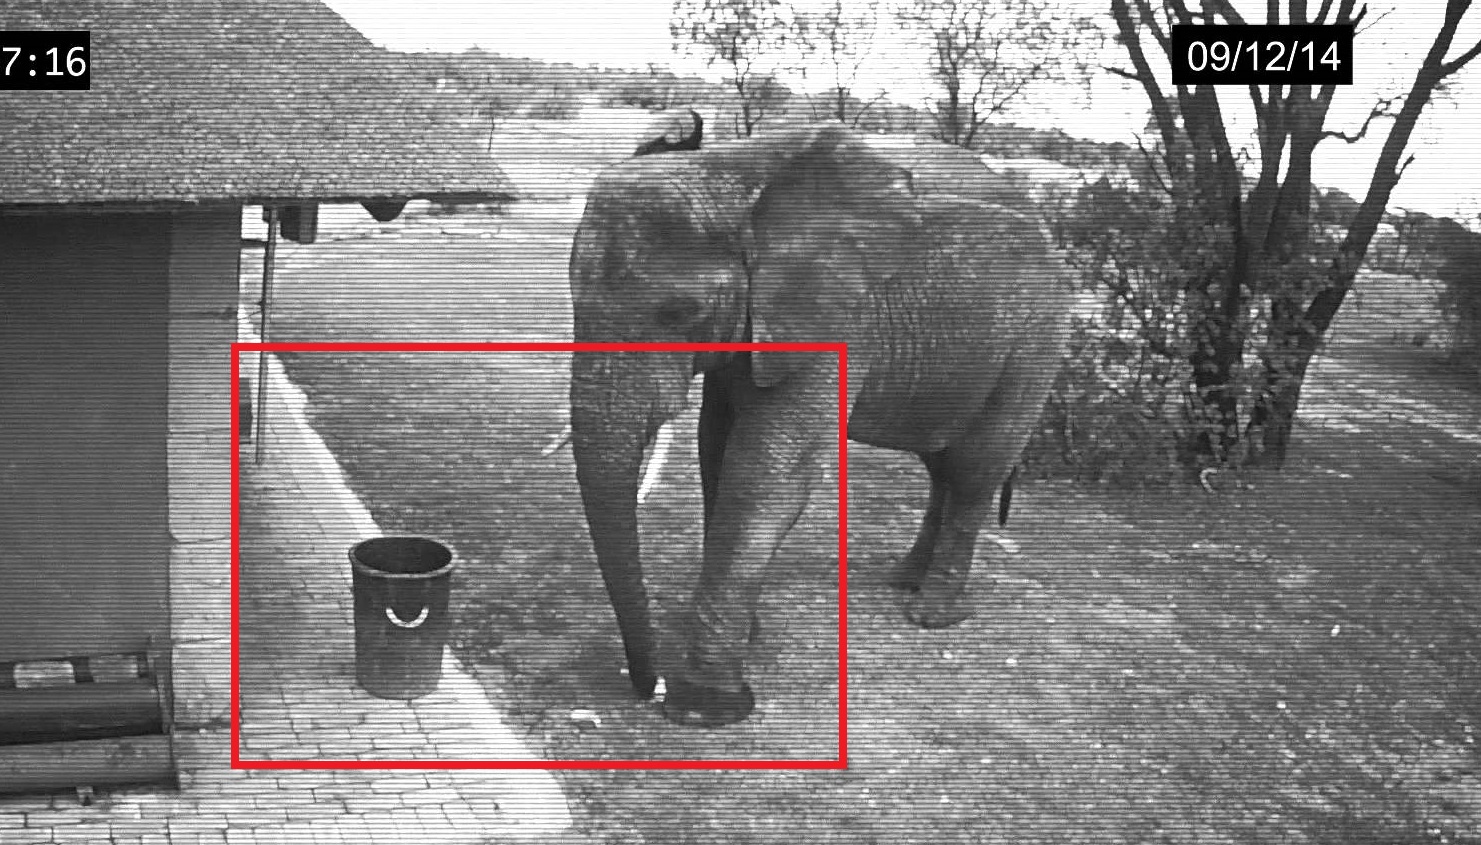 Kamera zachytila slona upratujúceho odpadky pred domom, mohli by sa od neho učiť aj ľudia